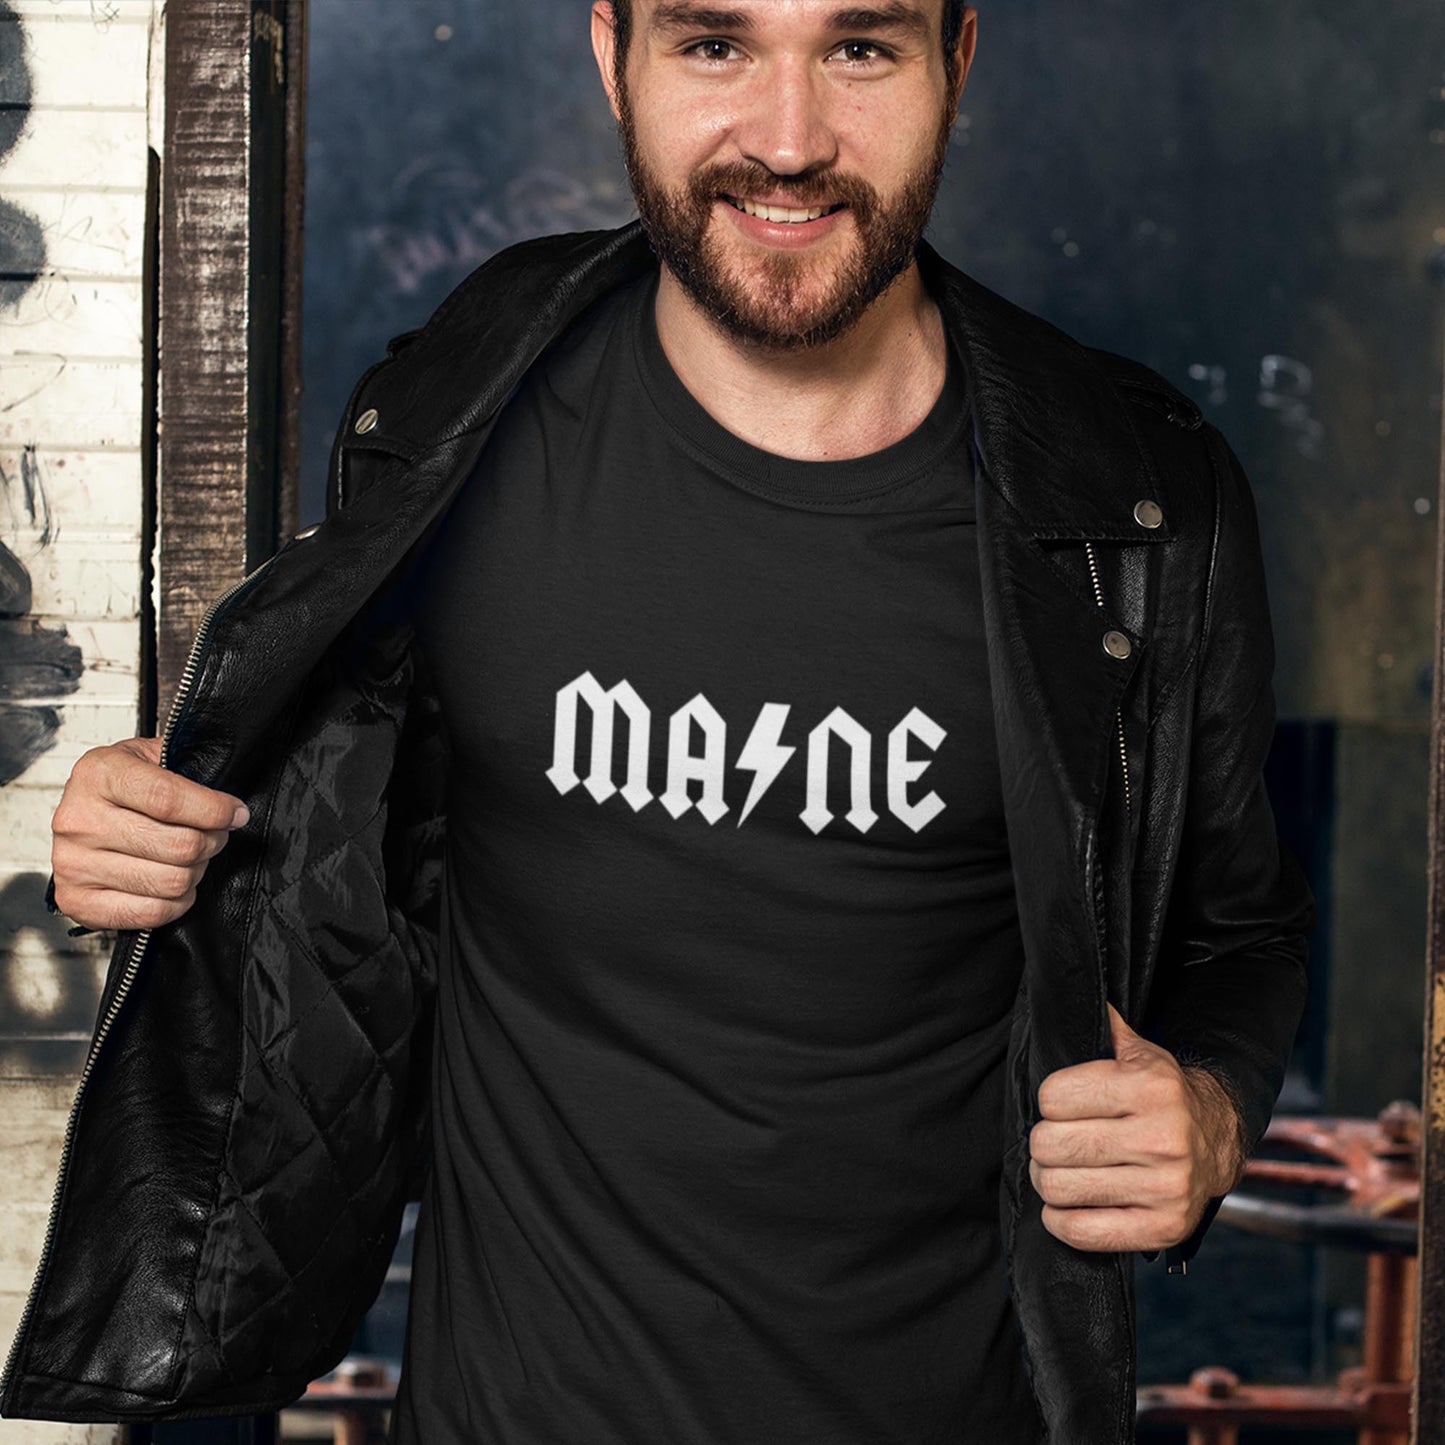 Maine ACDC Shirt - Maine Rock Band T-Shirt